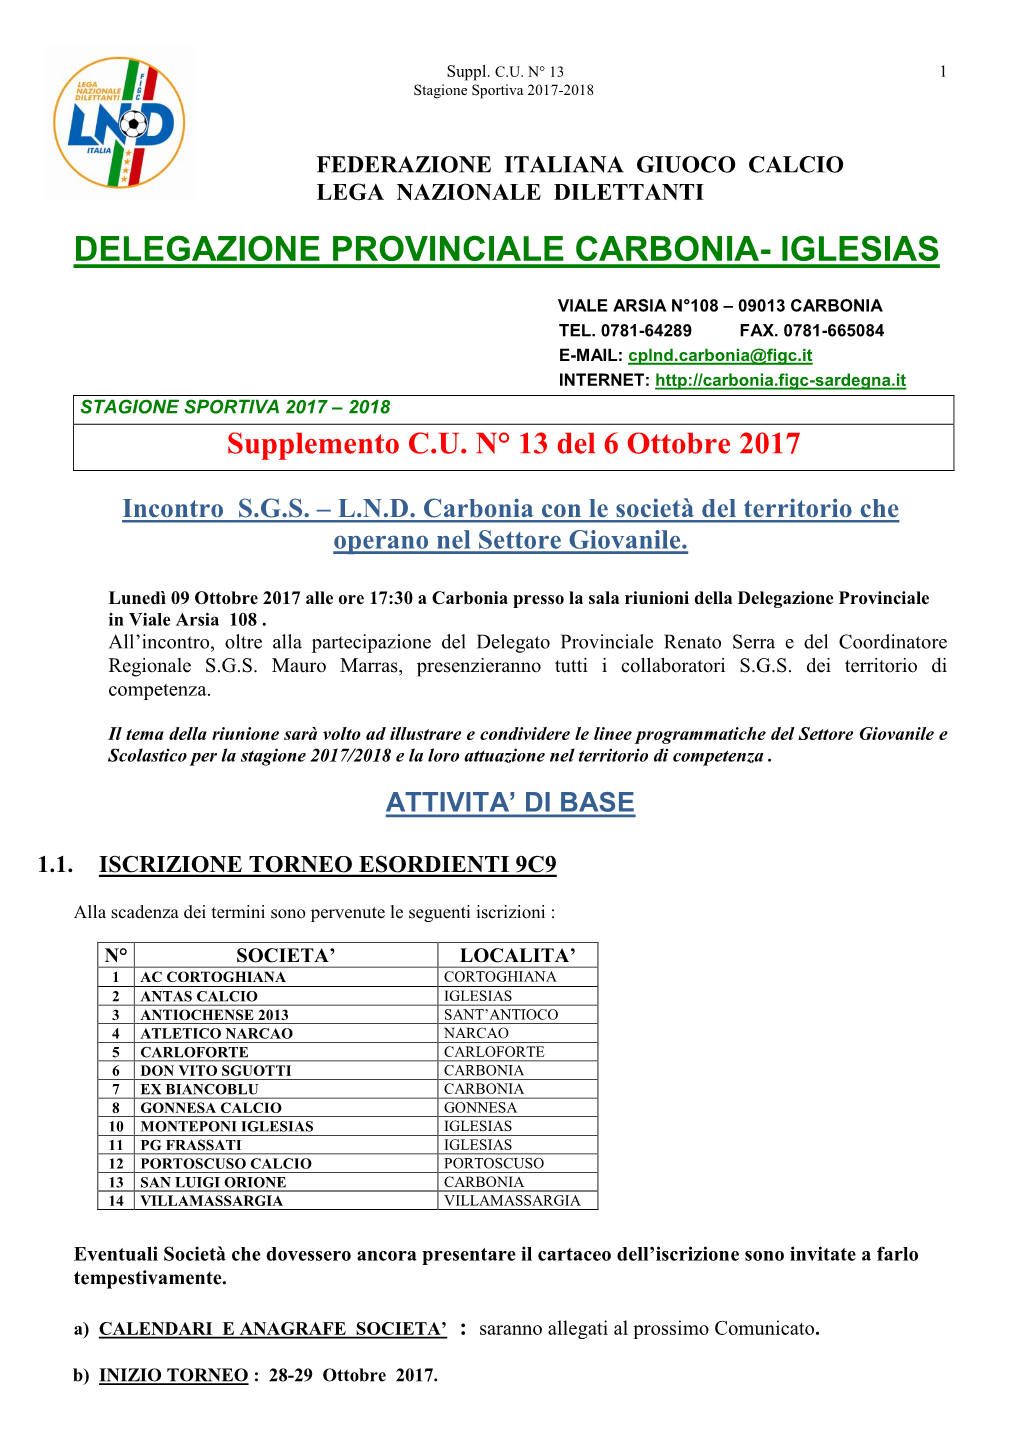 Delegazione Provinciale Carbonia- Iglesias